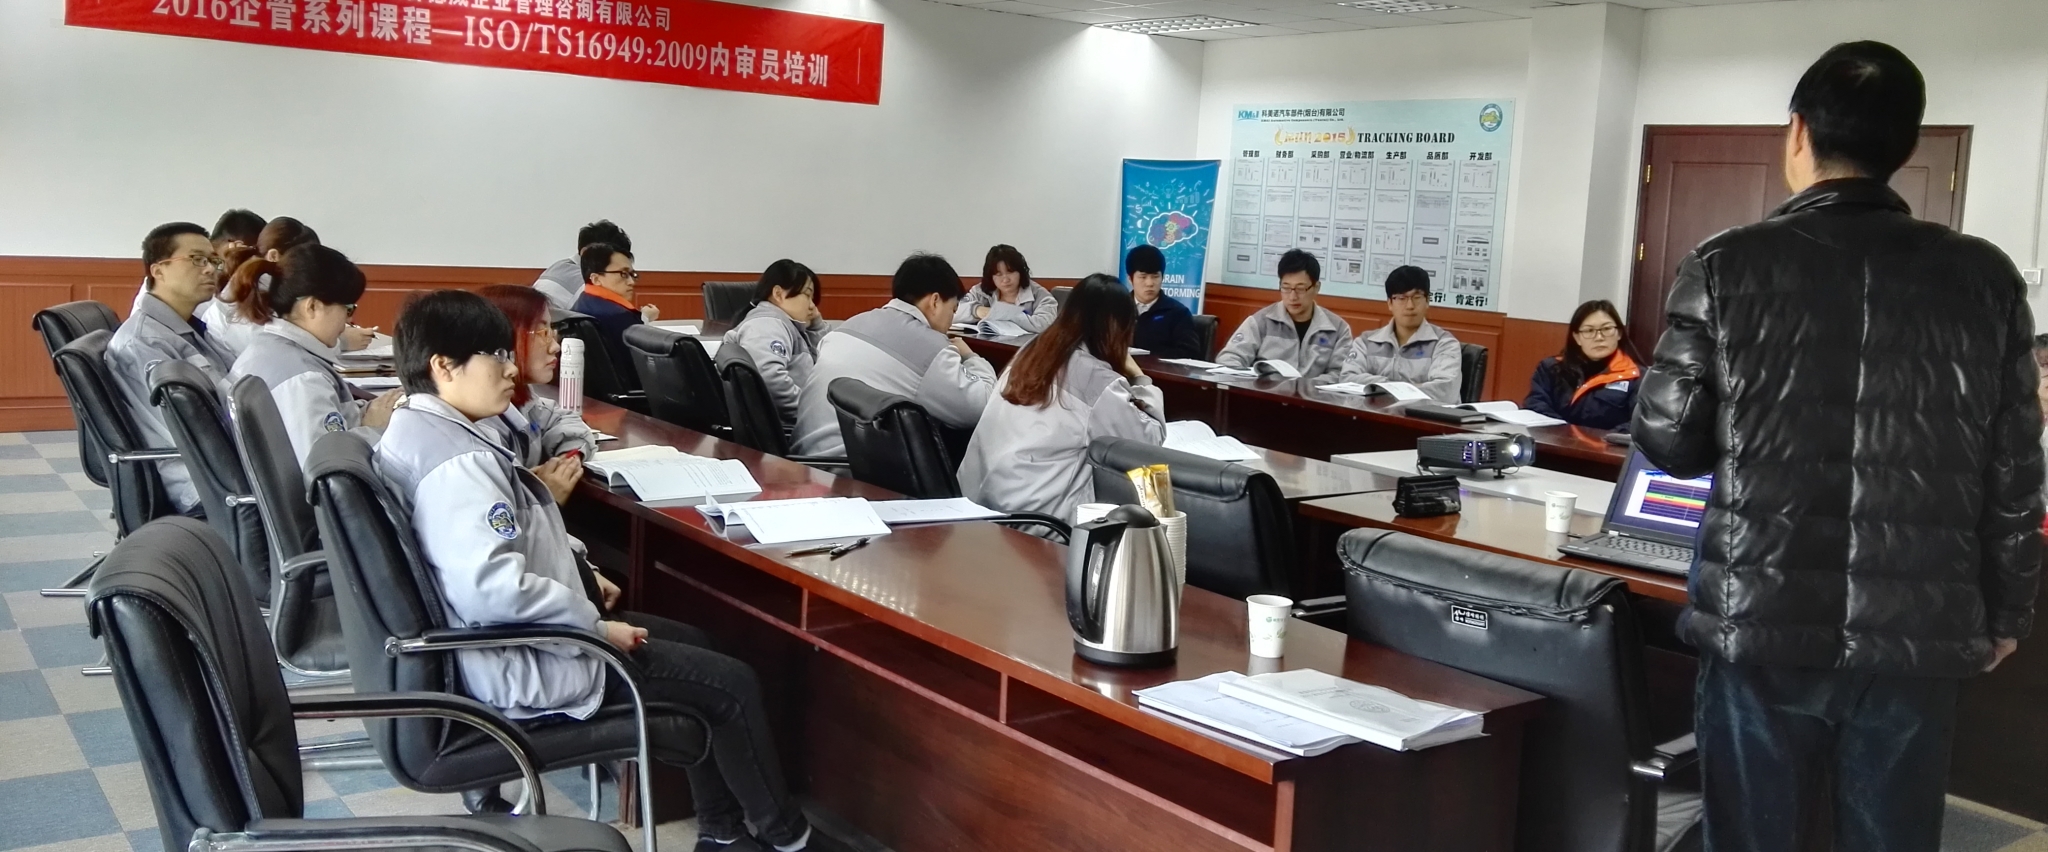 昆明分院举办中层管理人员能力提升培训班----中国科学院昆明分院